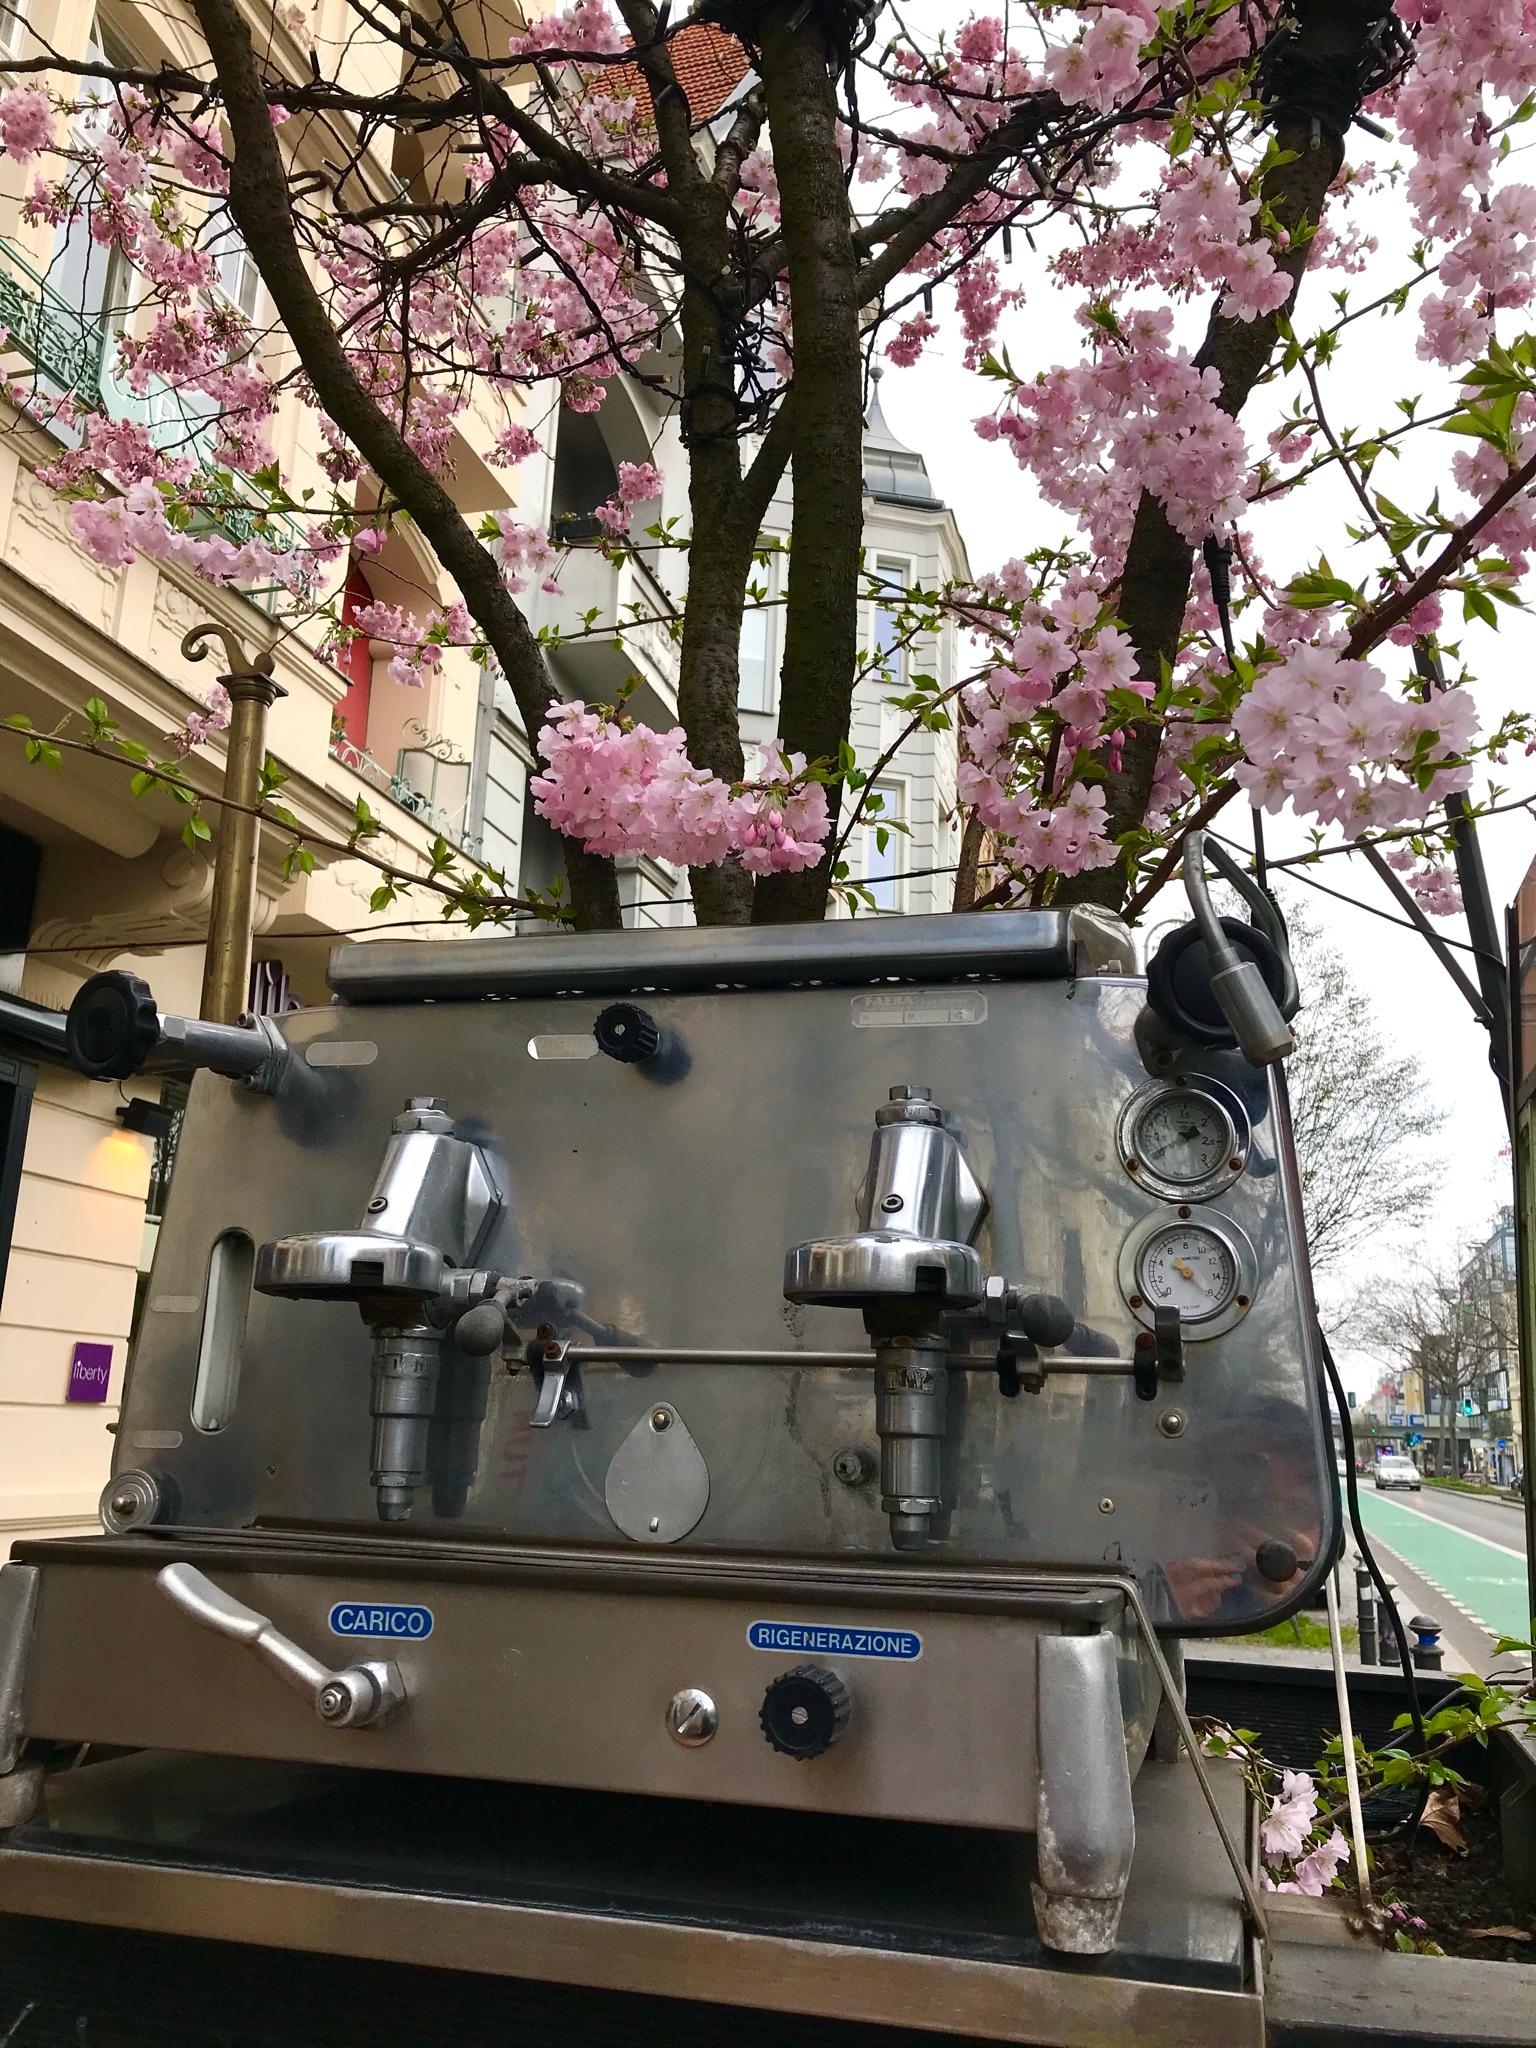 Kaffee und Frühling - eine fantastische Kombination!
#frühling #springvibes #butfirstcoffee